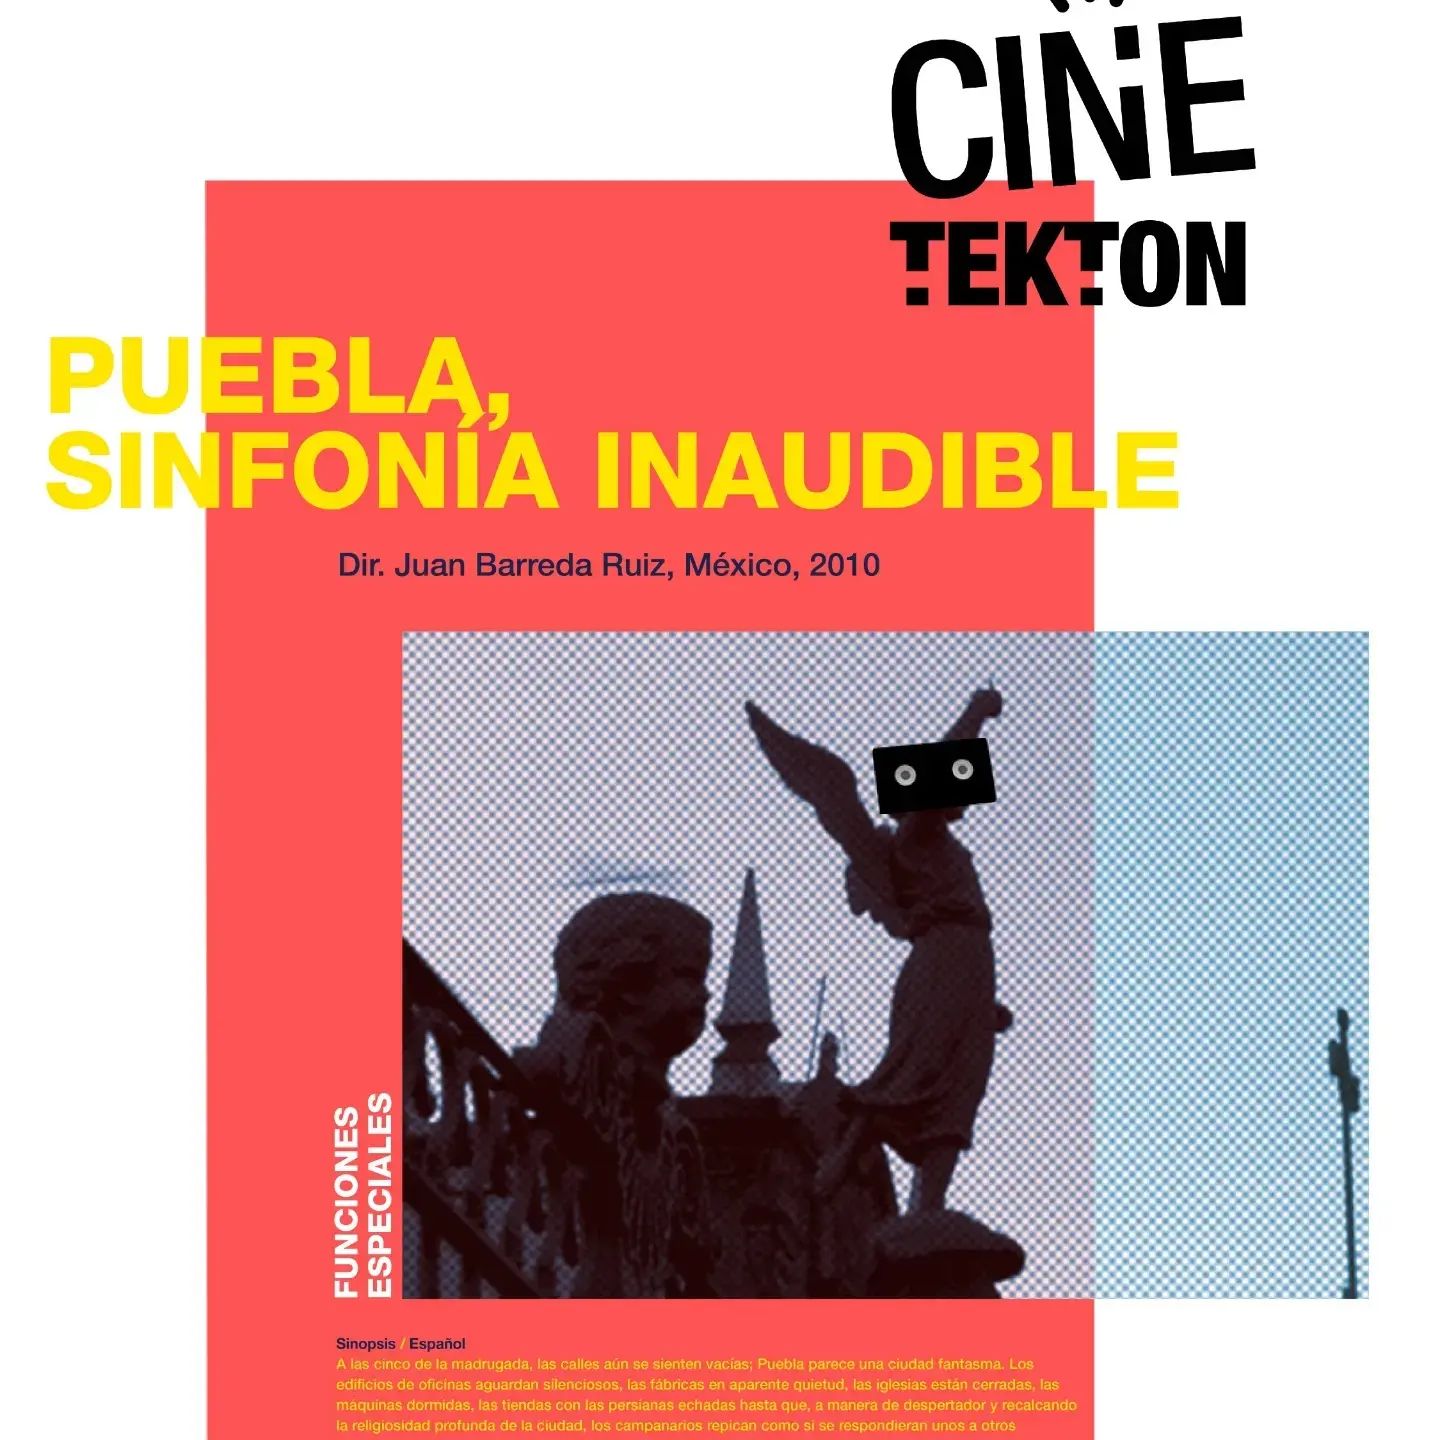 Inicia Cultura “Cinetekton”, festival de cine, conferencias y talleres